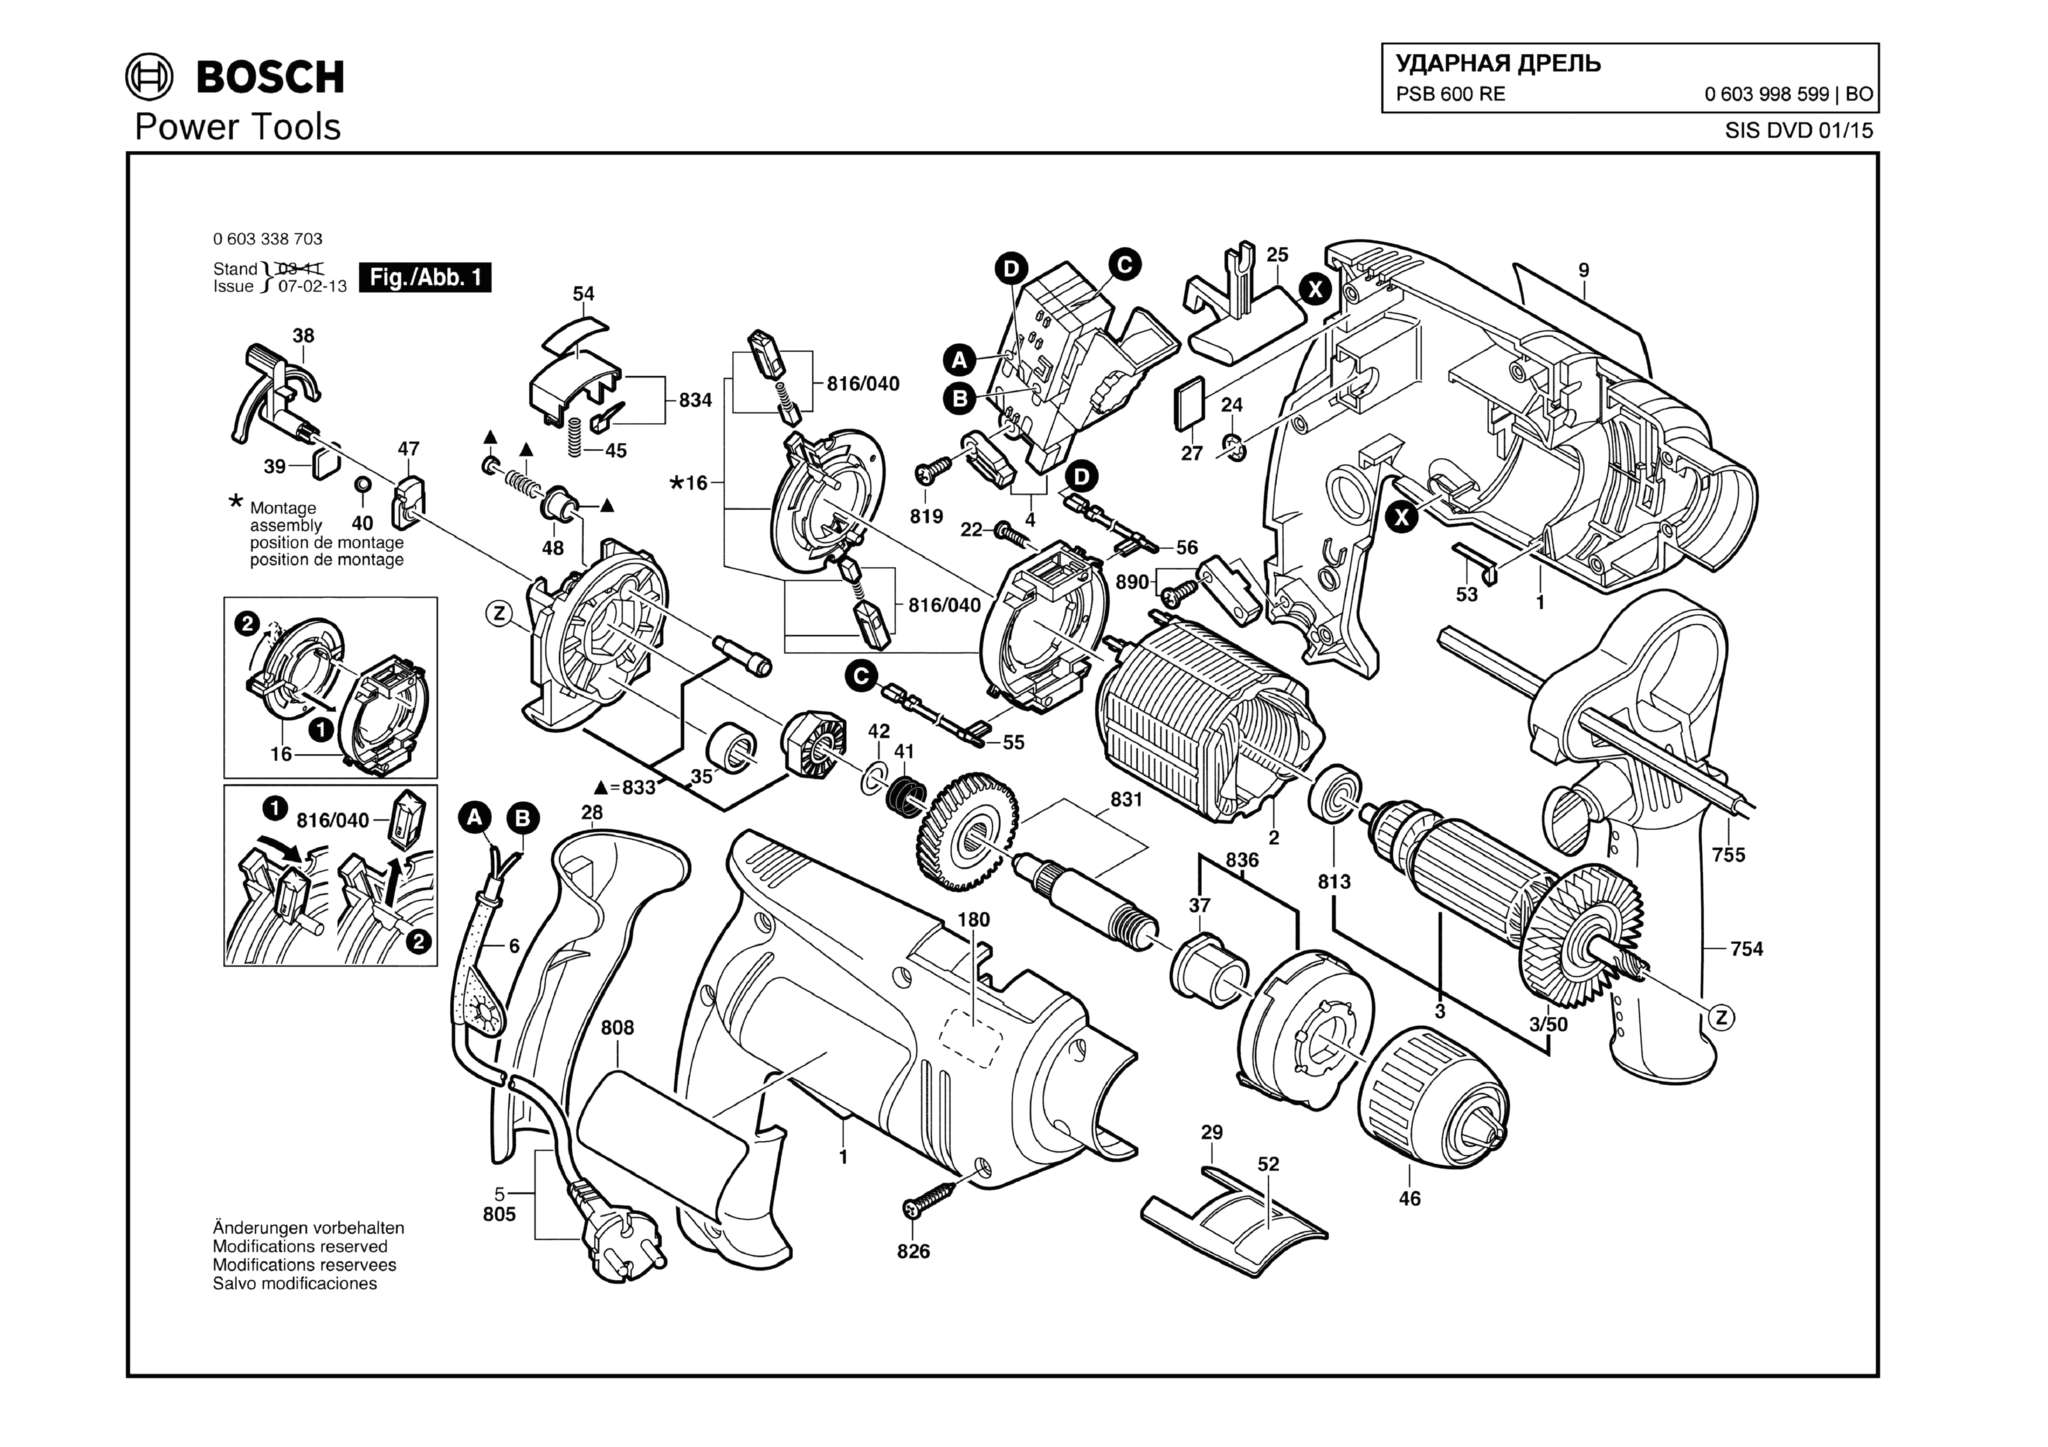 Запчасти, схема и деталировка Bosch PSB 600 RE (ТИП 0603998599)